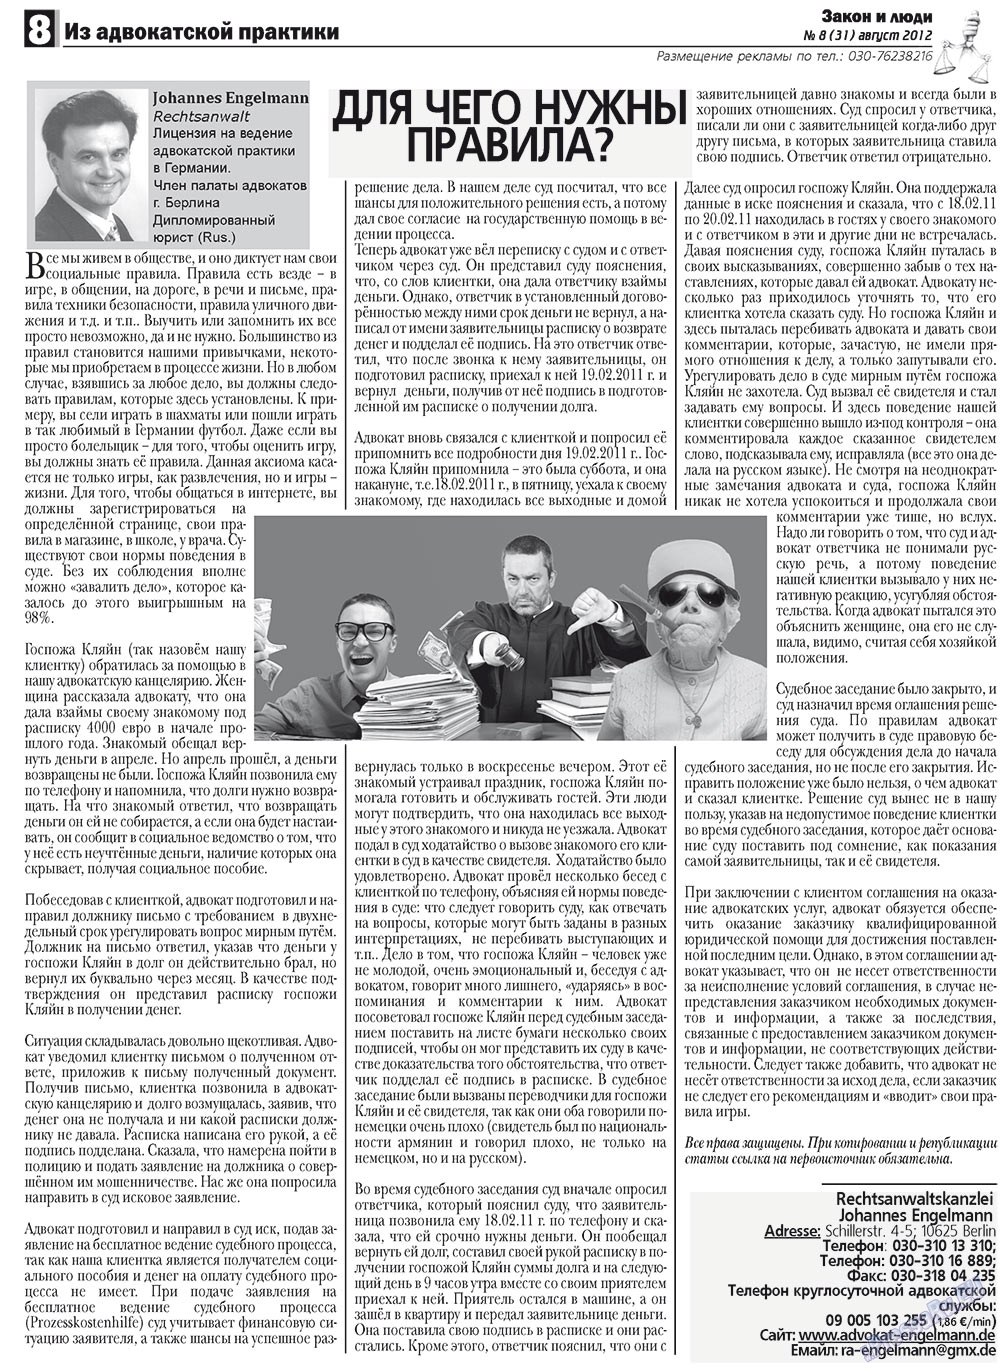 Закон и люди, газета. 2012 №8 стр.8